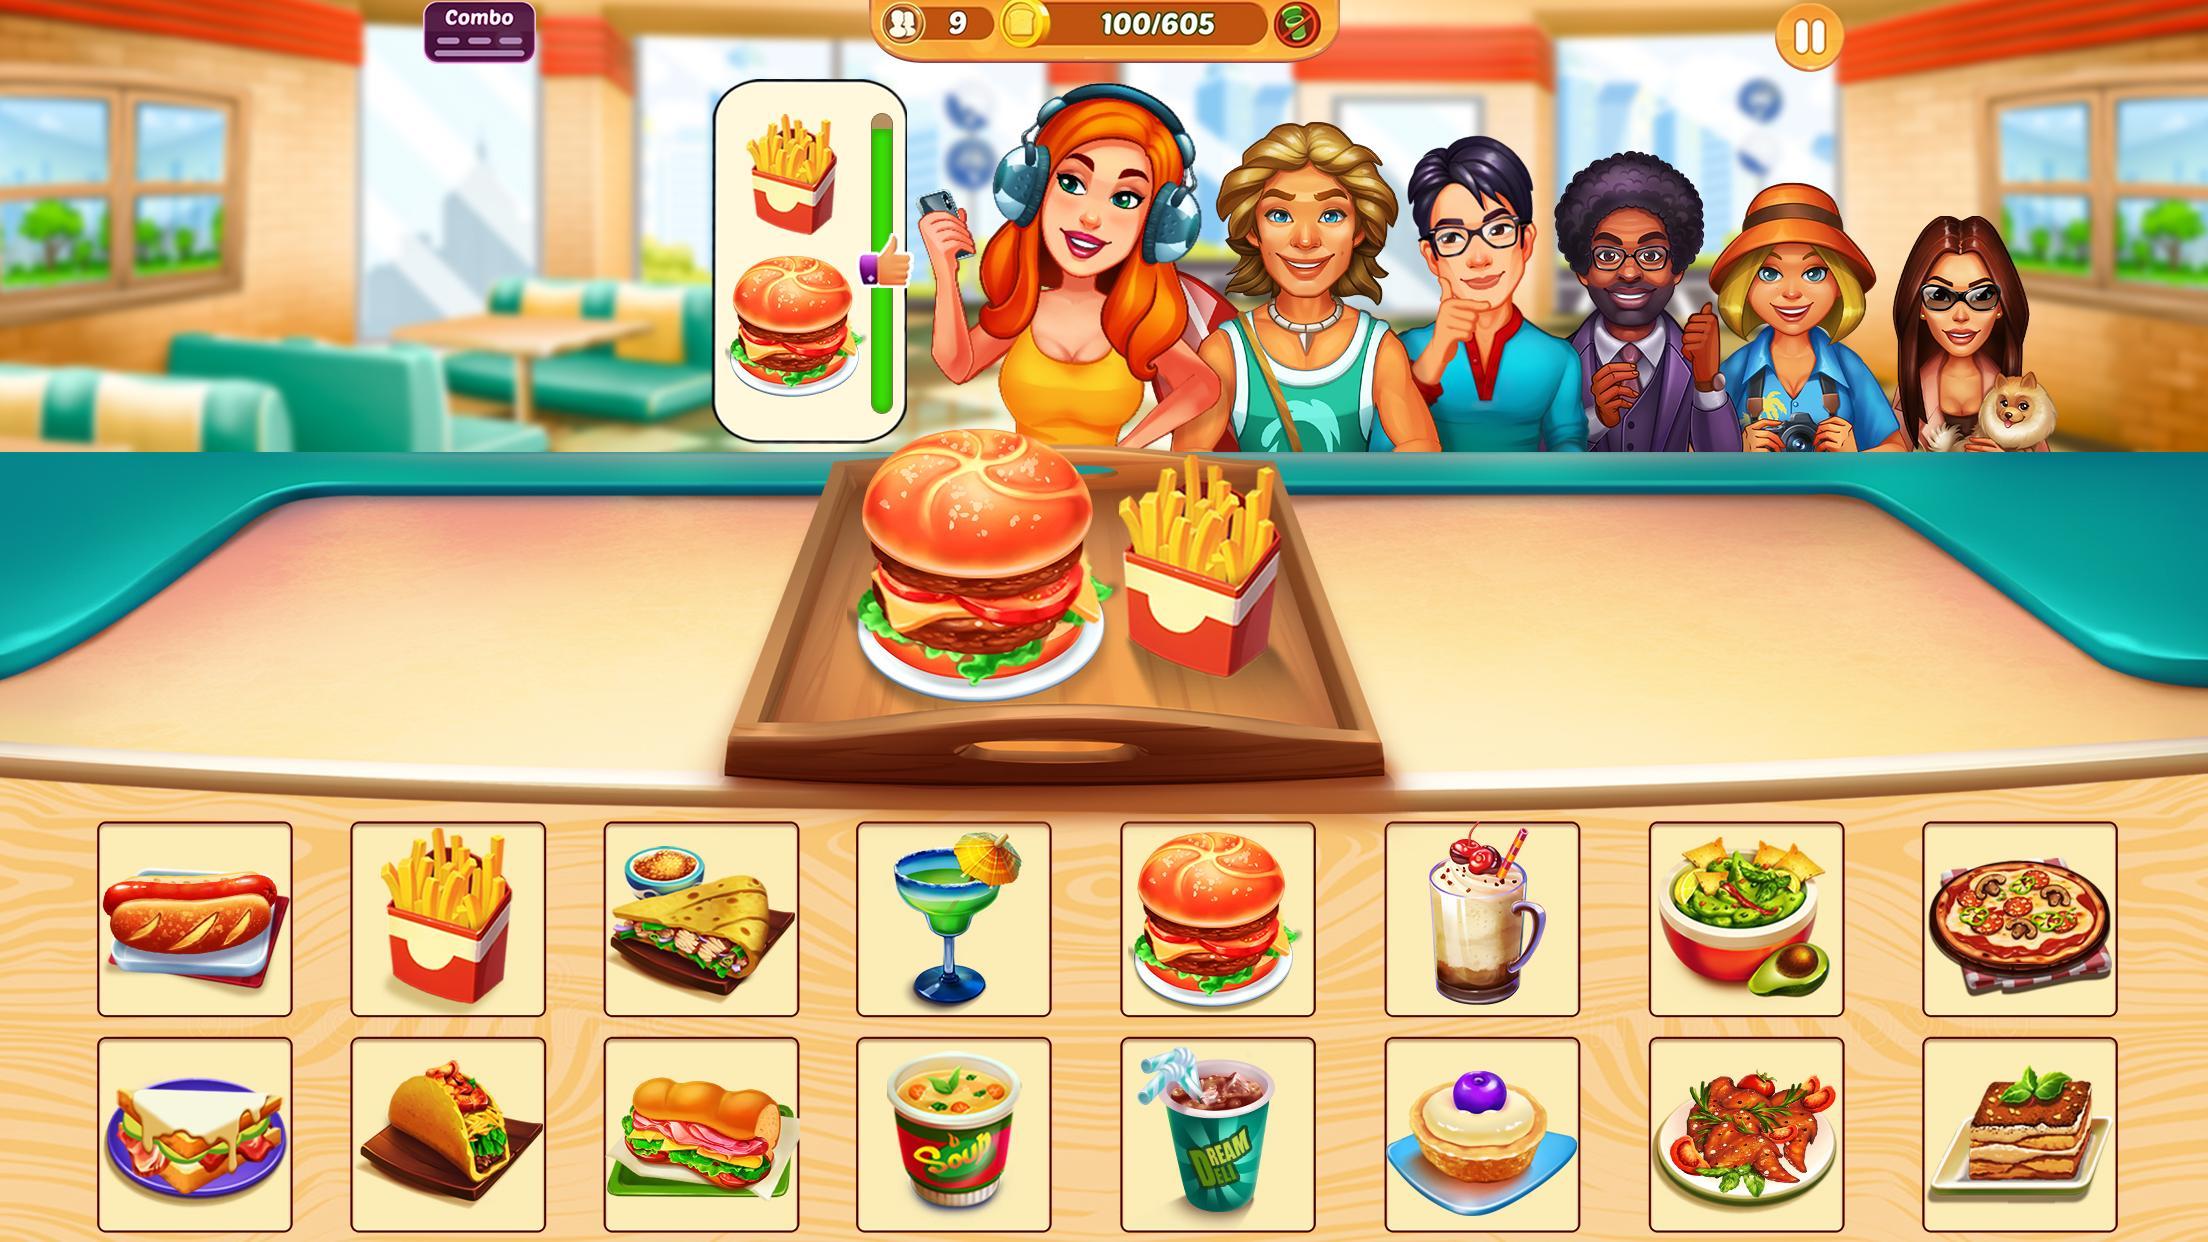 Screenshot 1 of Cook It - Trò chơi nhà hàng 1.3.6